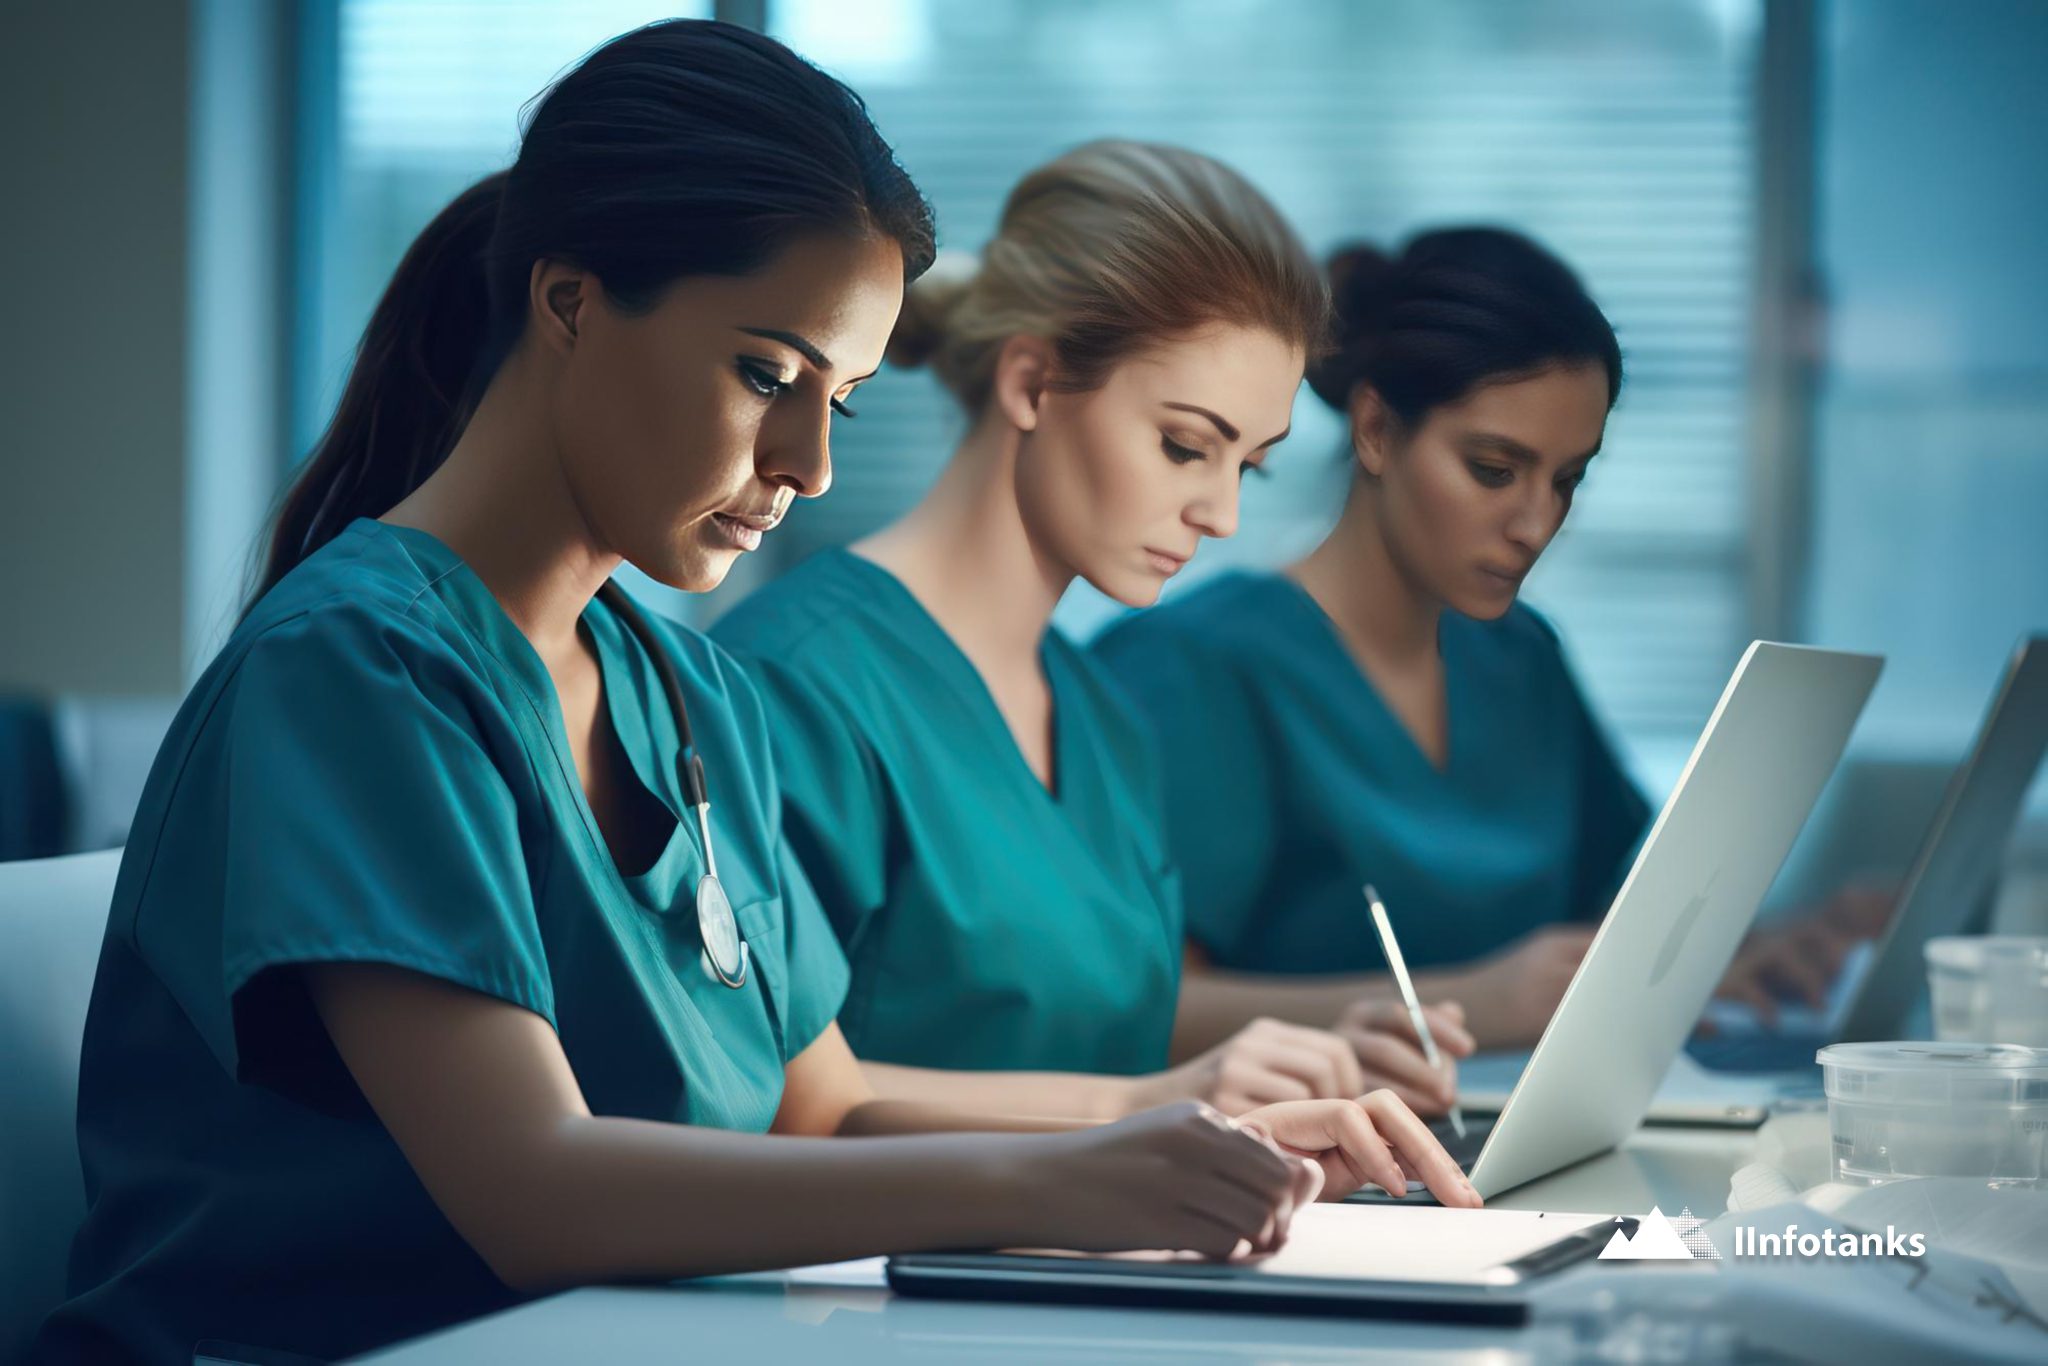 Leveraging Registered Nurses Email Lists